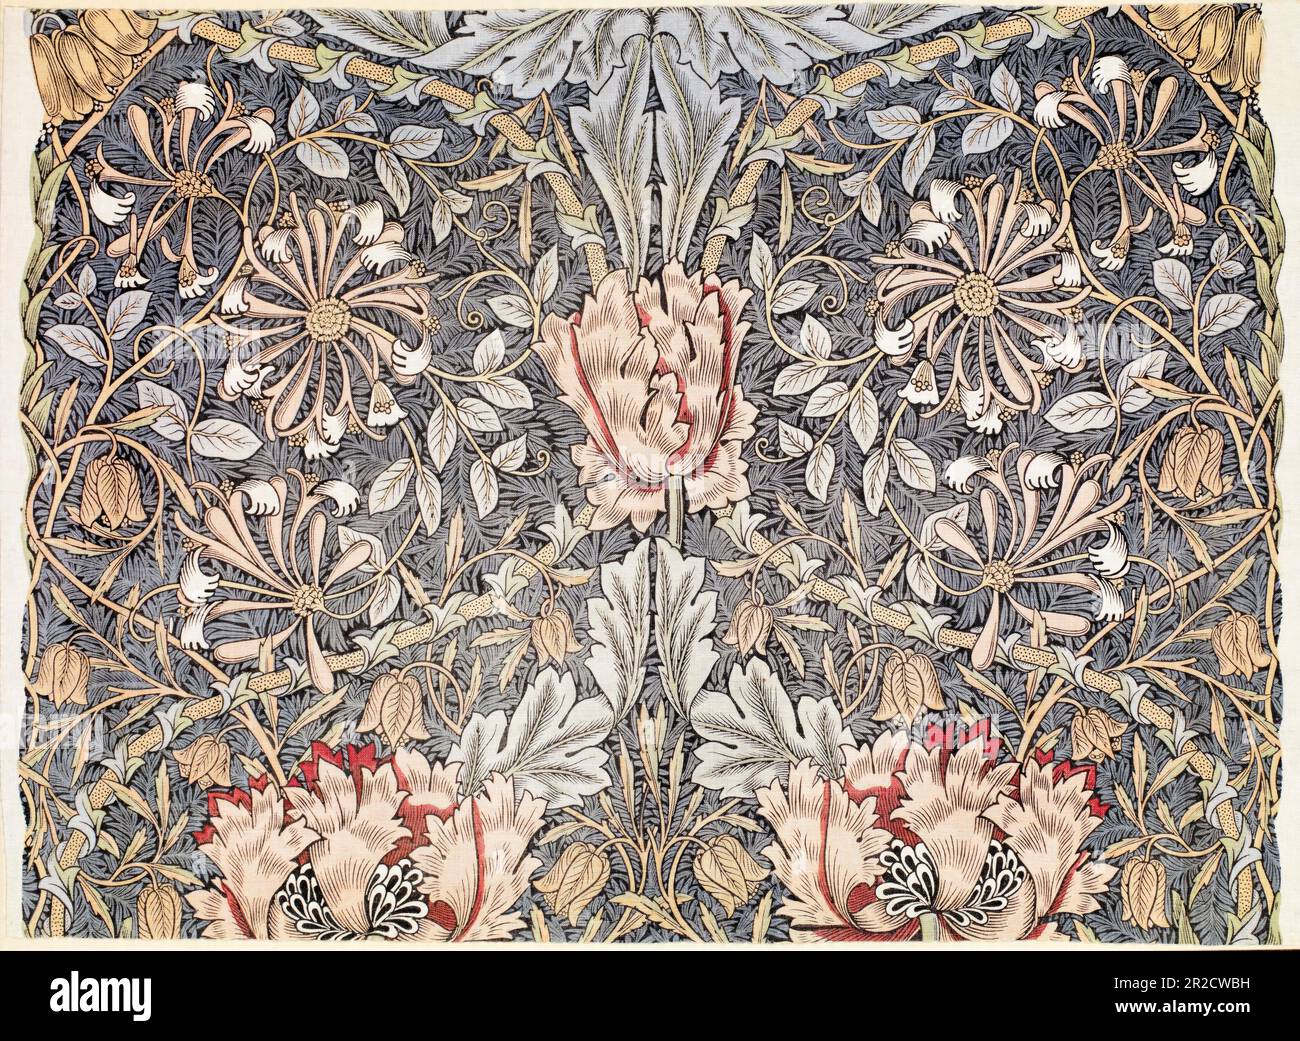 William Morris, Honeysuckle, fabric pattern design, 1876 Stock Photo